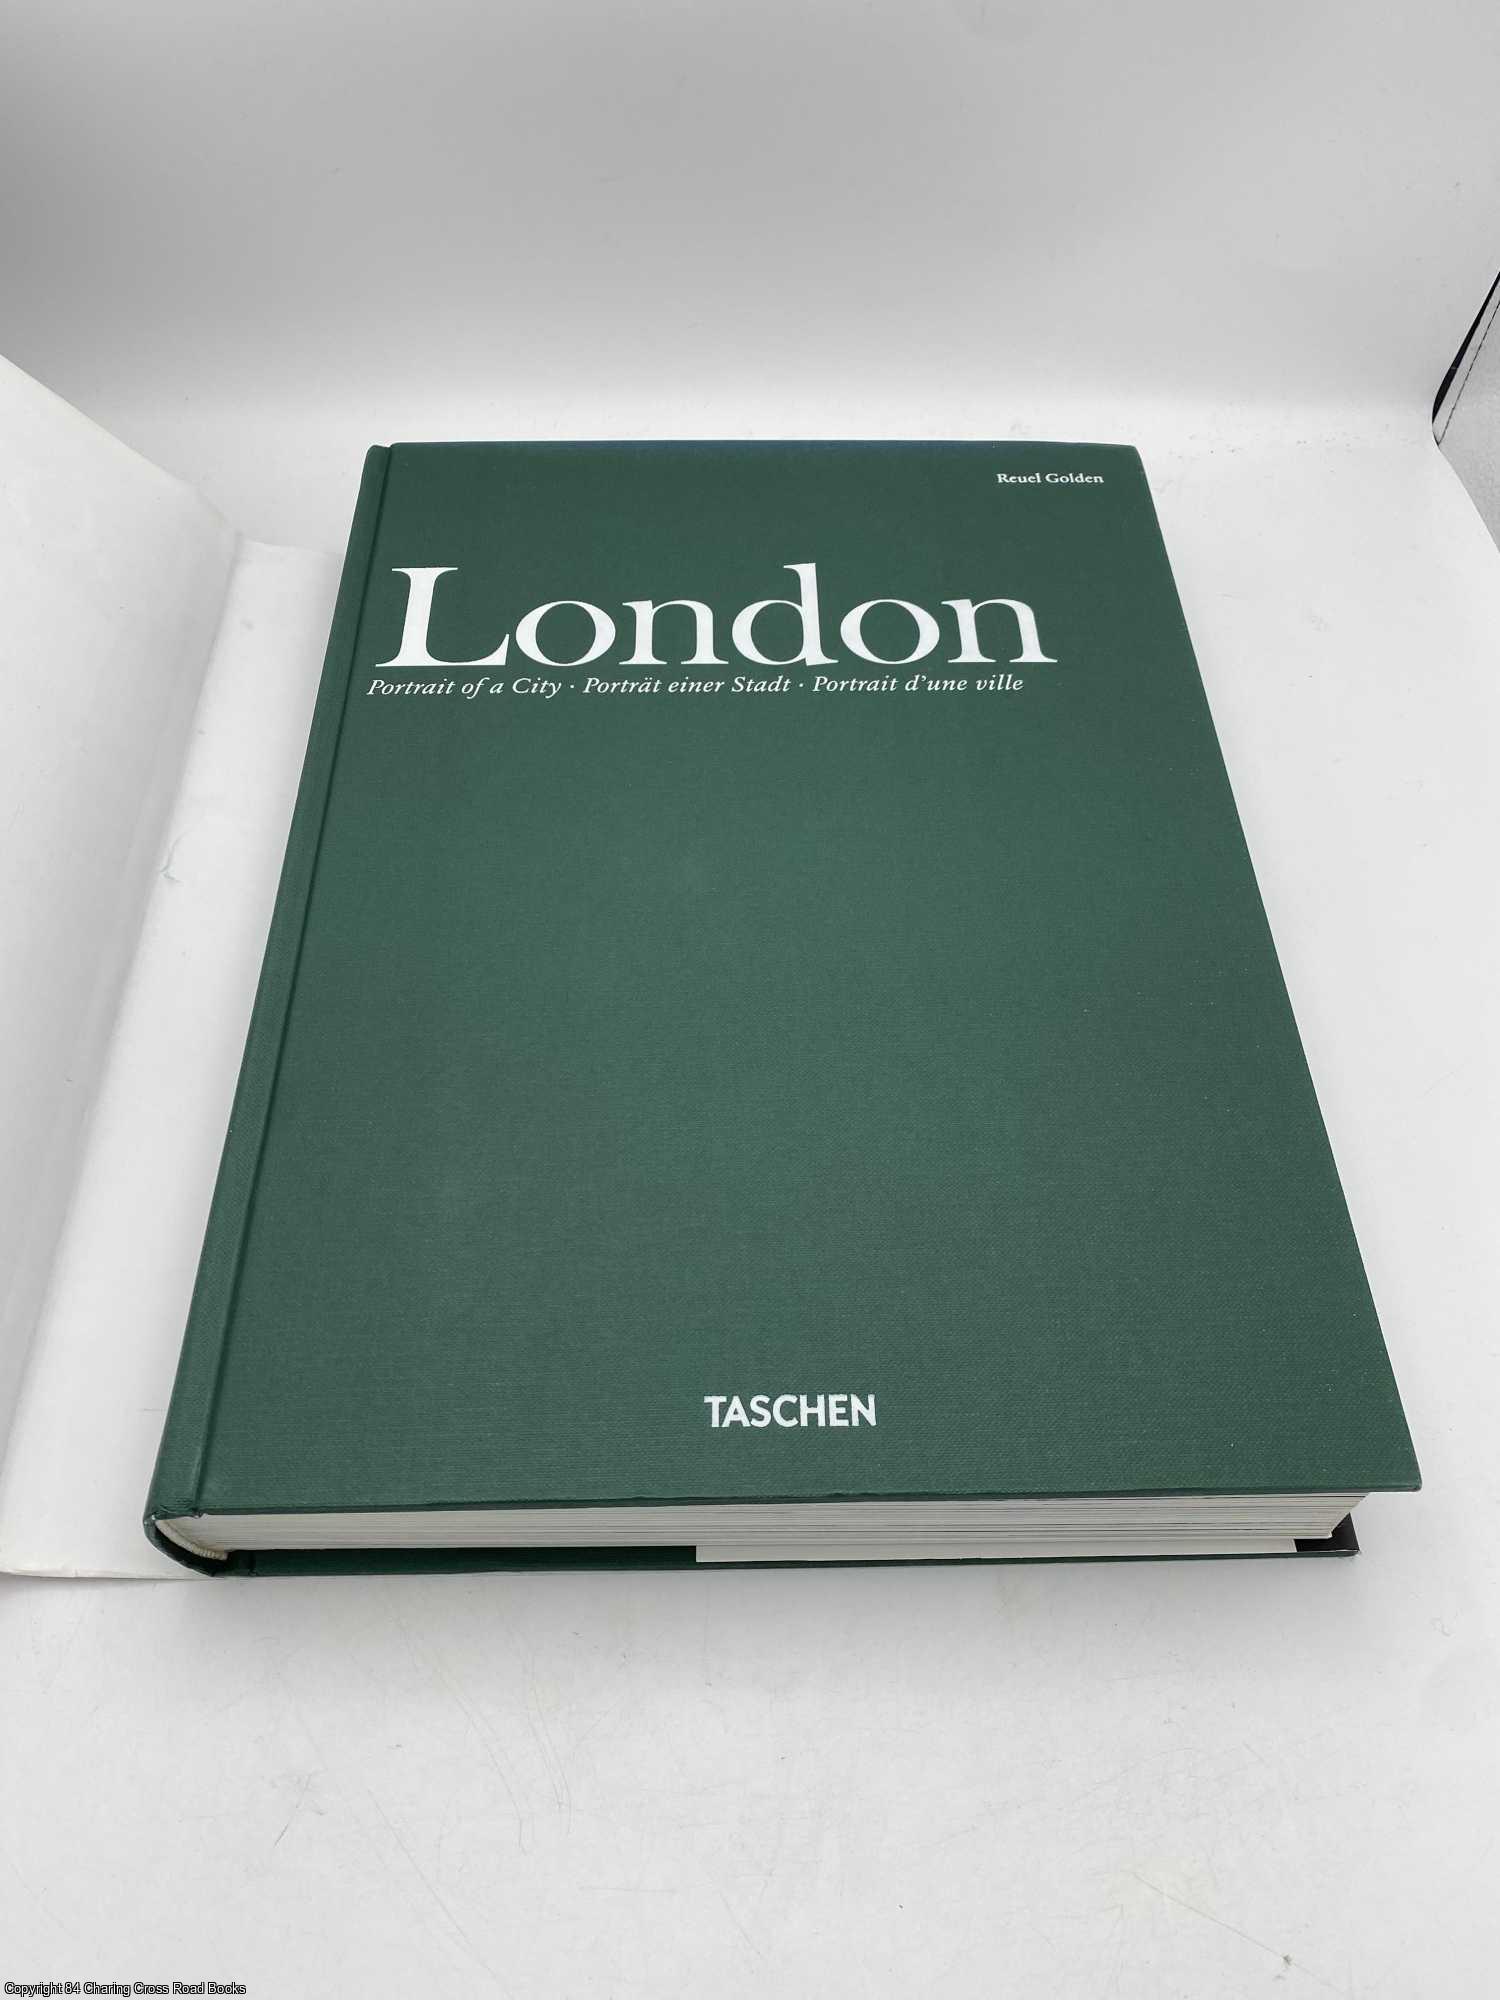 London Portrait of a City book